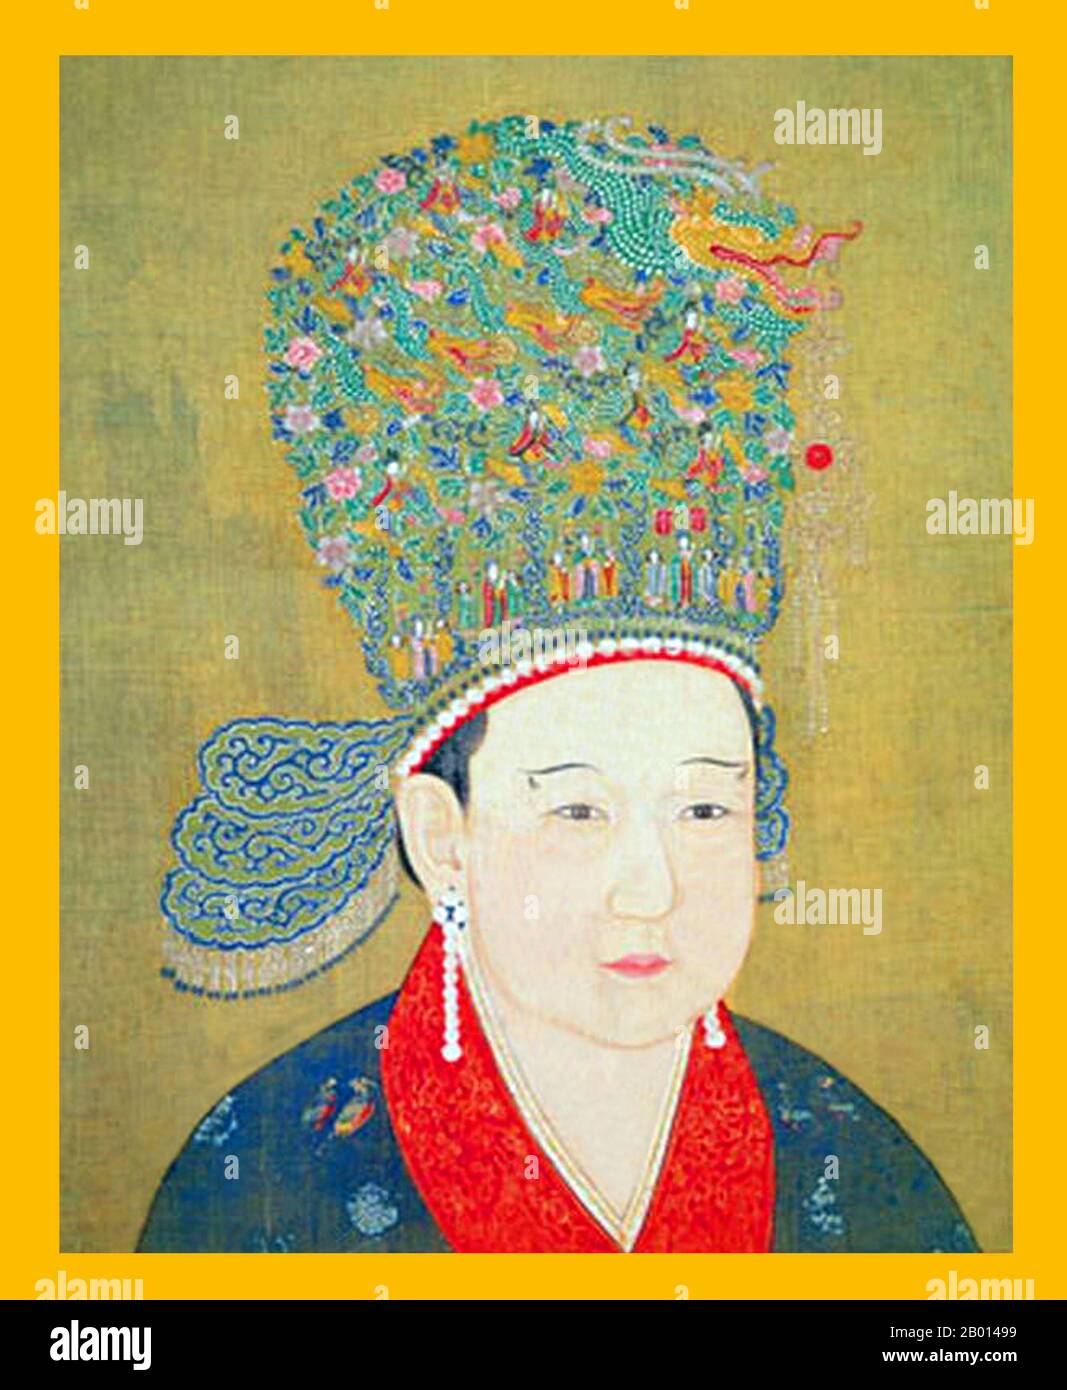 Cina: Imperatrice Yang (30 giugno 1162 - 18 gennaio 1233), consorte dell'Imperatore Ningzong, tredicesimo sovrano della Dinastia Song e quarto sovrano della Sinastia Song Meridionale (r.1194-1224). Pittura impiccagione di scrol, c. 1194-1233. L'imperatrice Yang, formalmente conosciuta come Gongsheng e conosciuta anche come Yang Meizi, fu consorte all'Imperatore Ningzong. Succedette all'imperatrice Han ed era conosciuta per la sua ambizione e la sua astuzia, lavorando insieme al suo alleato Shi Miyuan, che divenne grande cancelliere. Ha servito come co-reggente dell'imperatore Lizong fino alla sua morte. È considerata "una delle più potenti imperatrici della dinastia Song". Foto Stock